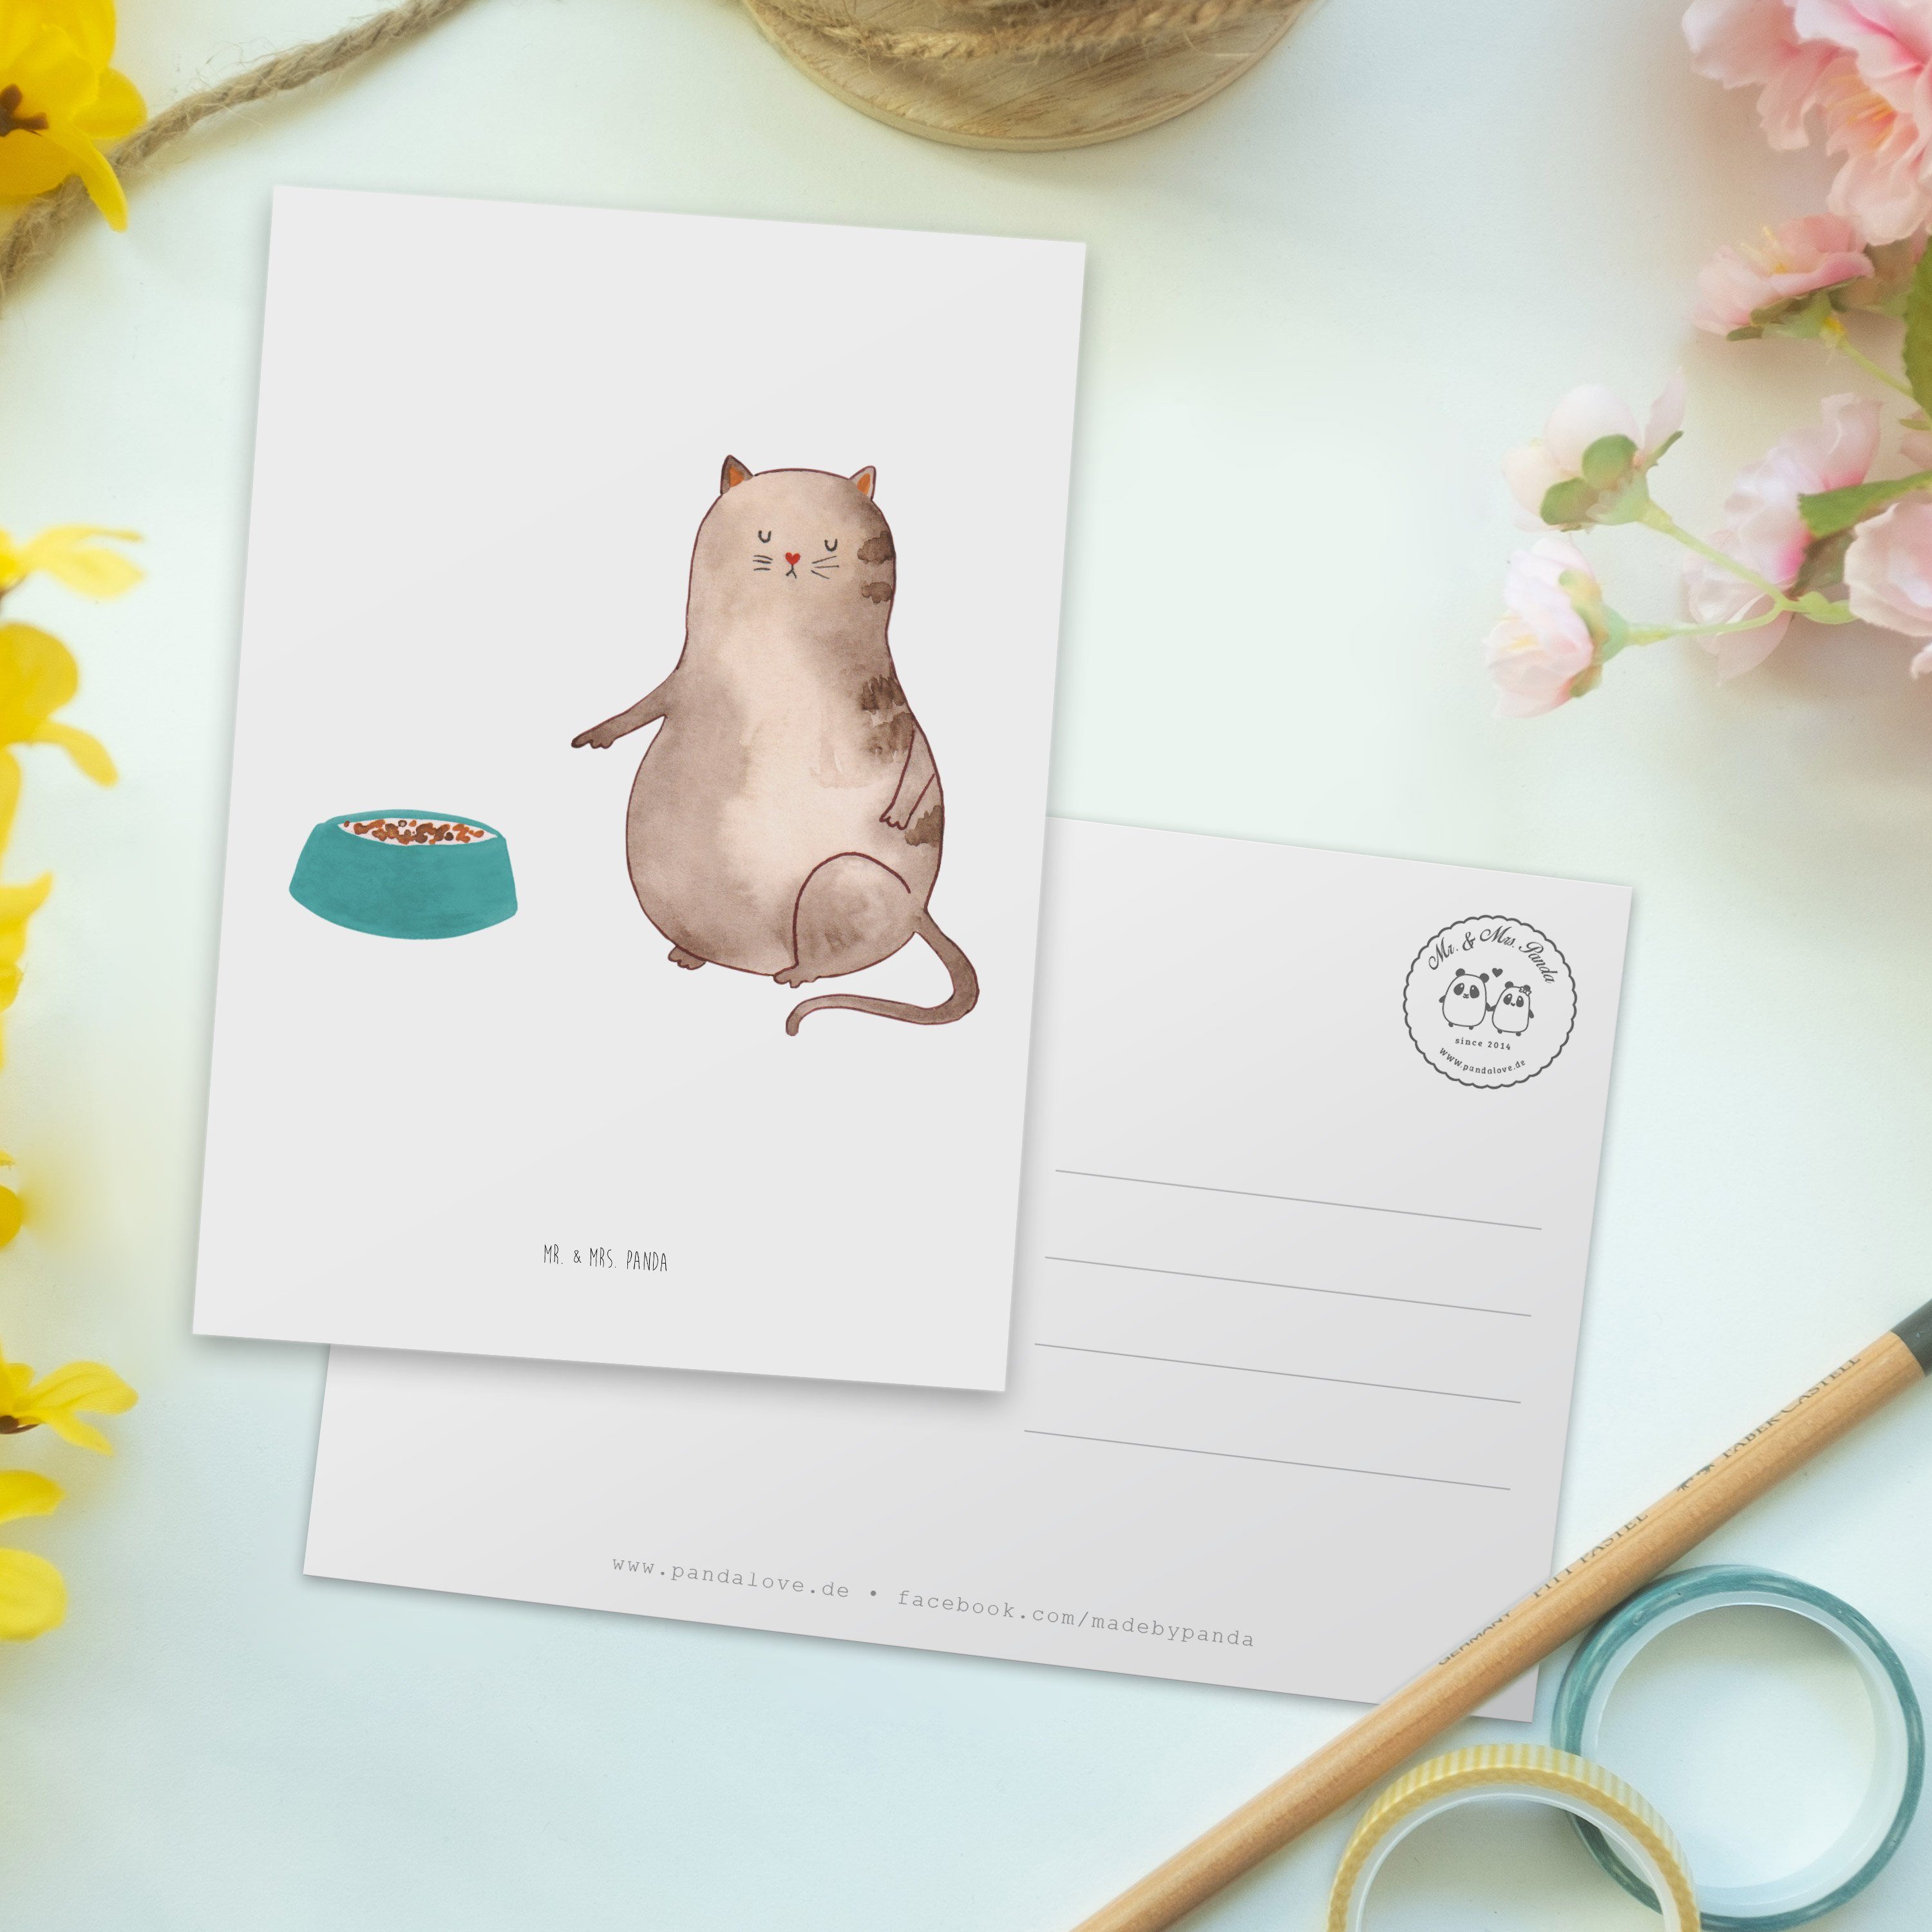 Mr. & Mrs. - Panda Postkarte Einladungskarte, Geschenk, fressen - Weiß Katze Katzenliebhaberprod